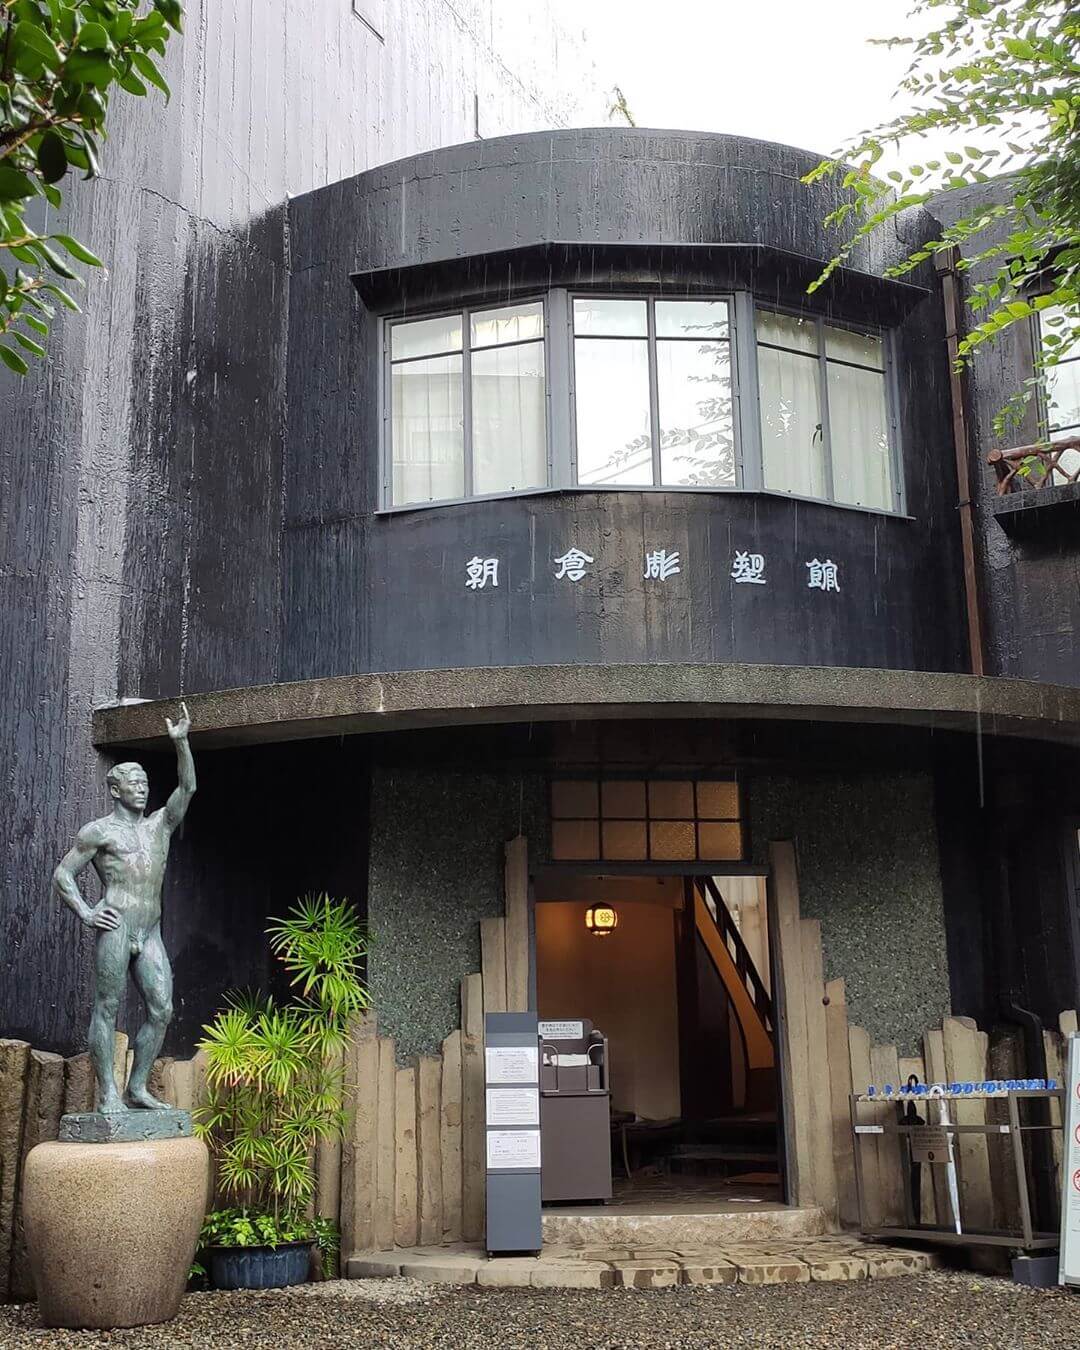 free tokyo walking tours - asakusa museum of sculpture